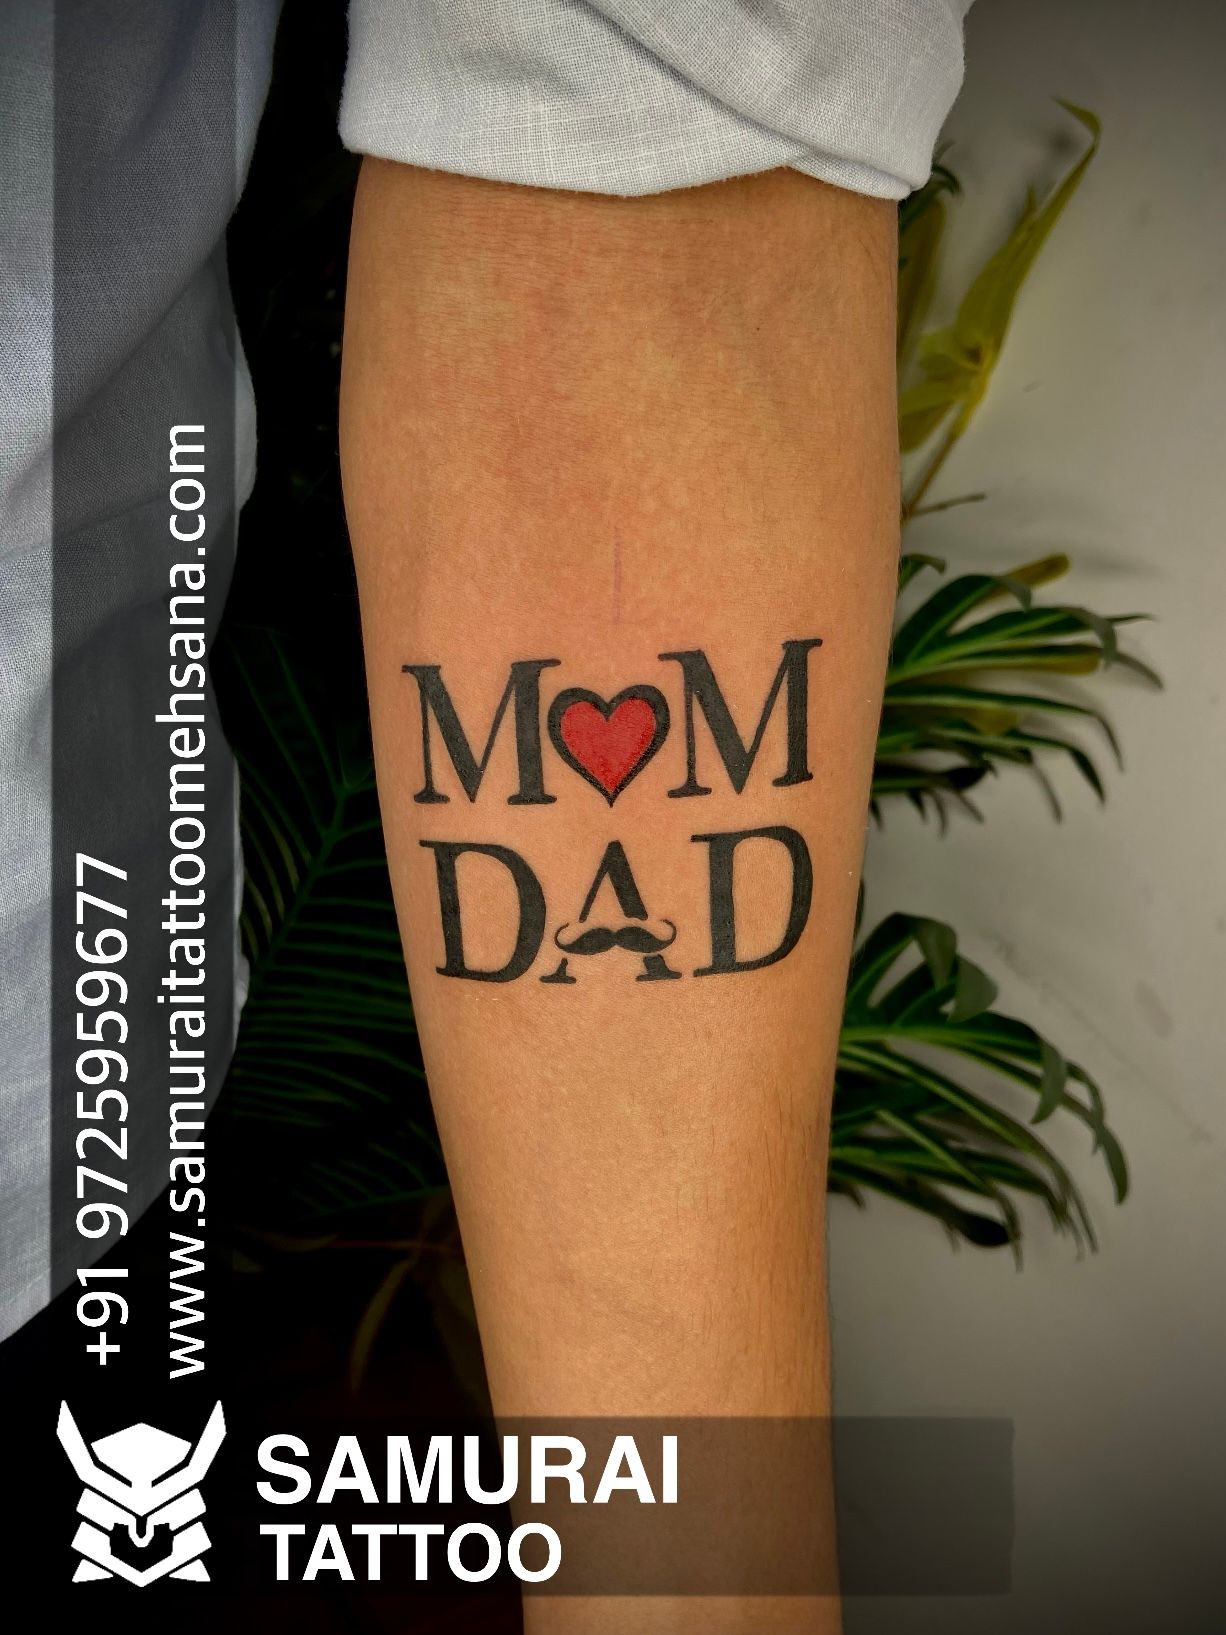 Krishna Tattoo Studio - #mom #dad #tattoos #design #tattooist #ink  #tattooforgirls #getink #at #krishna #tattoo #studio #goa #titoslane |  Facebook